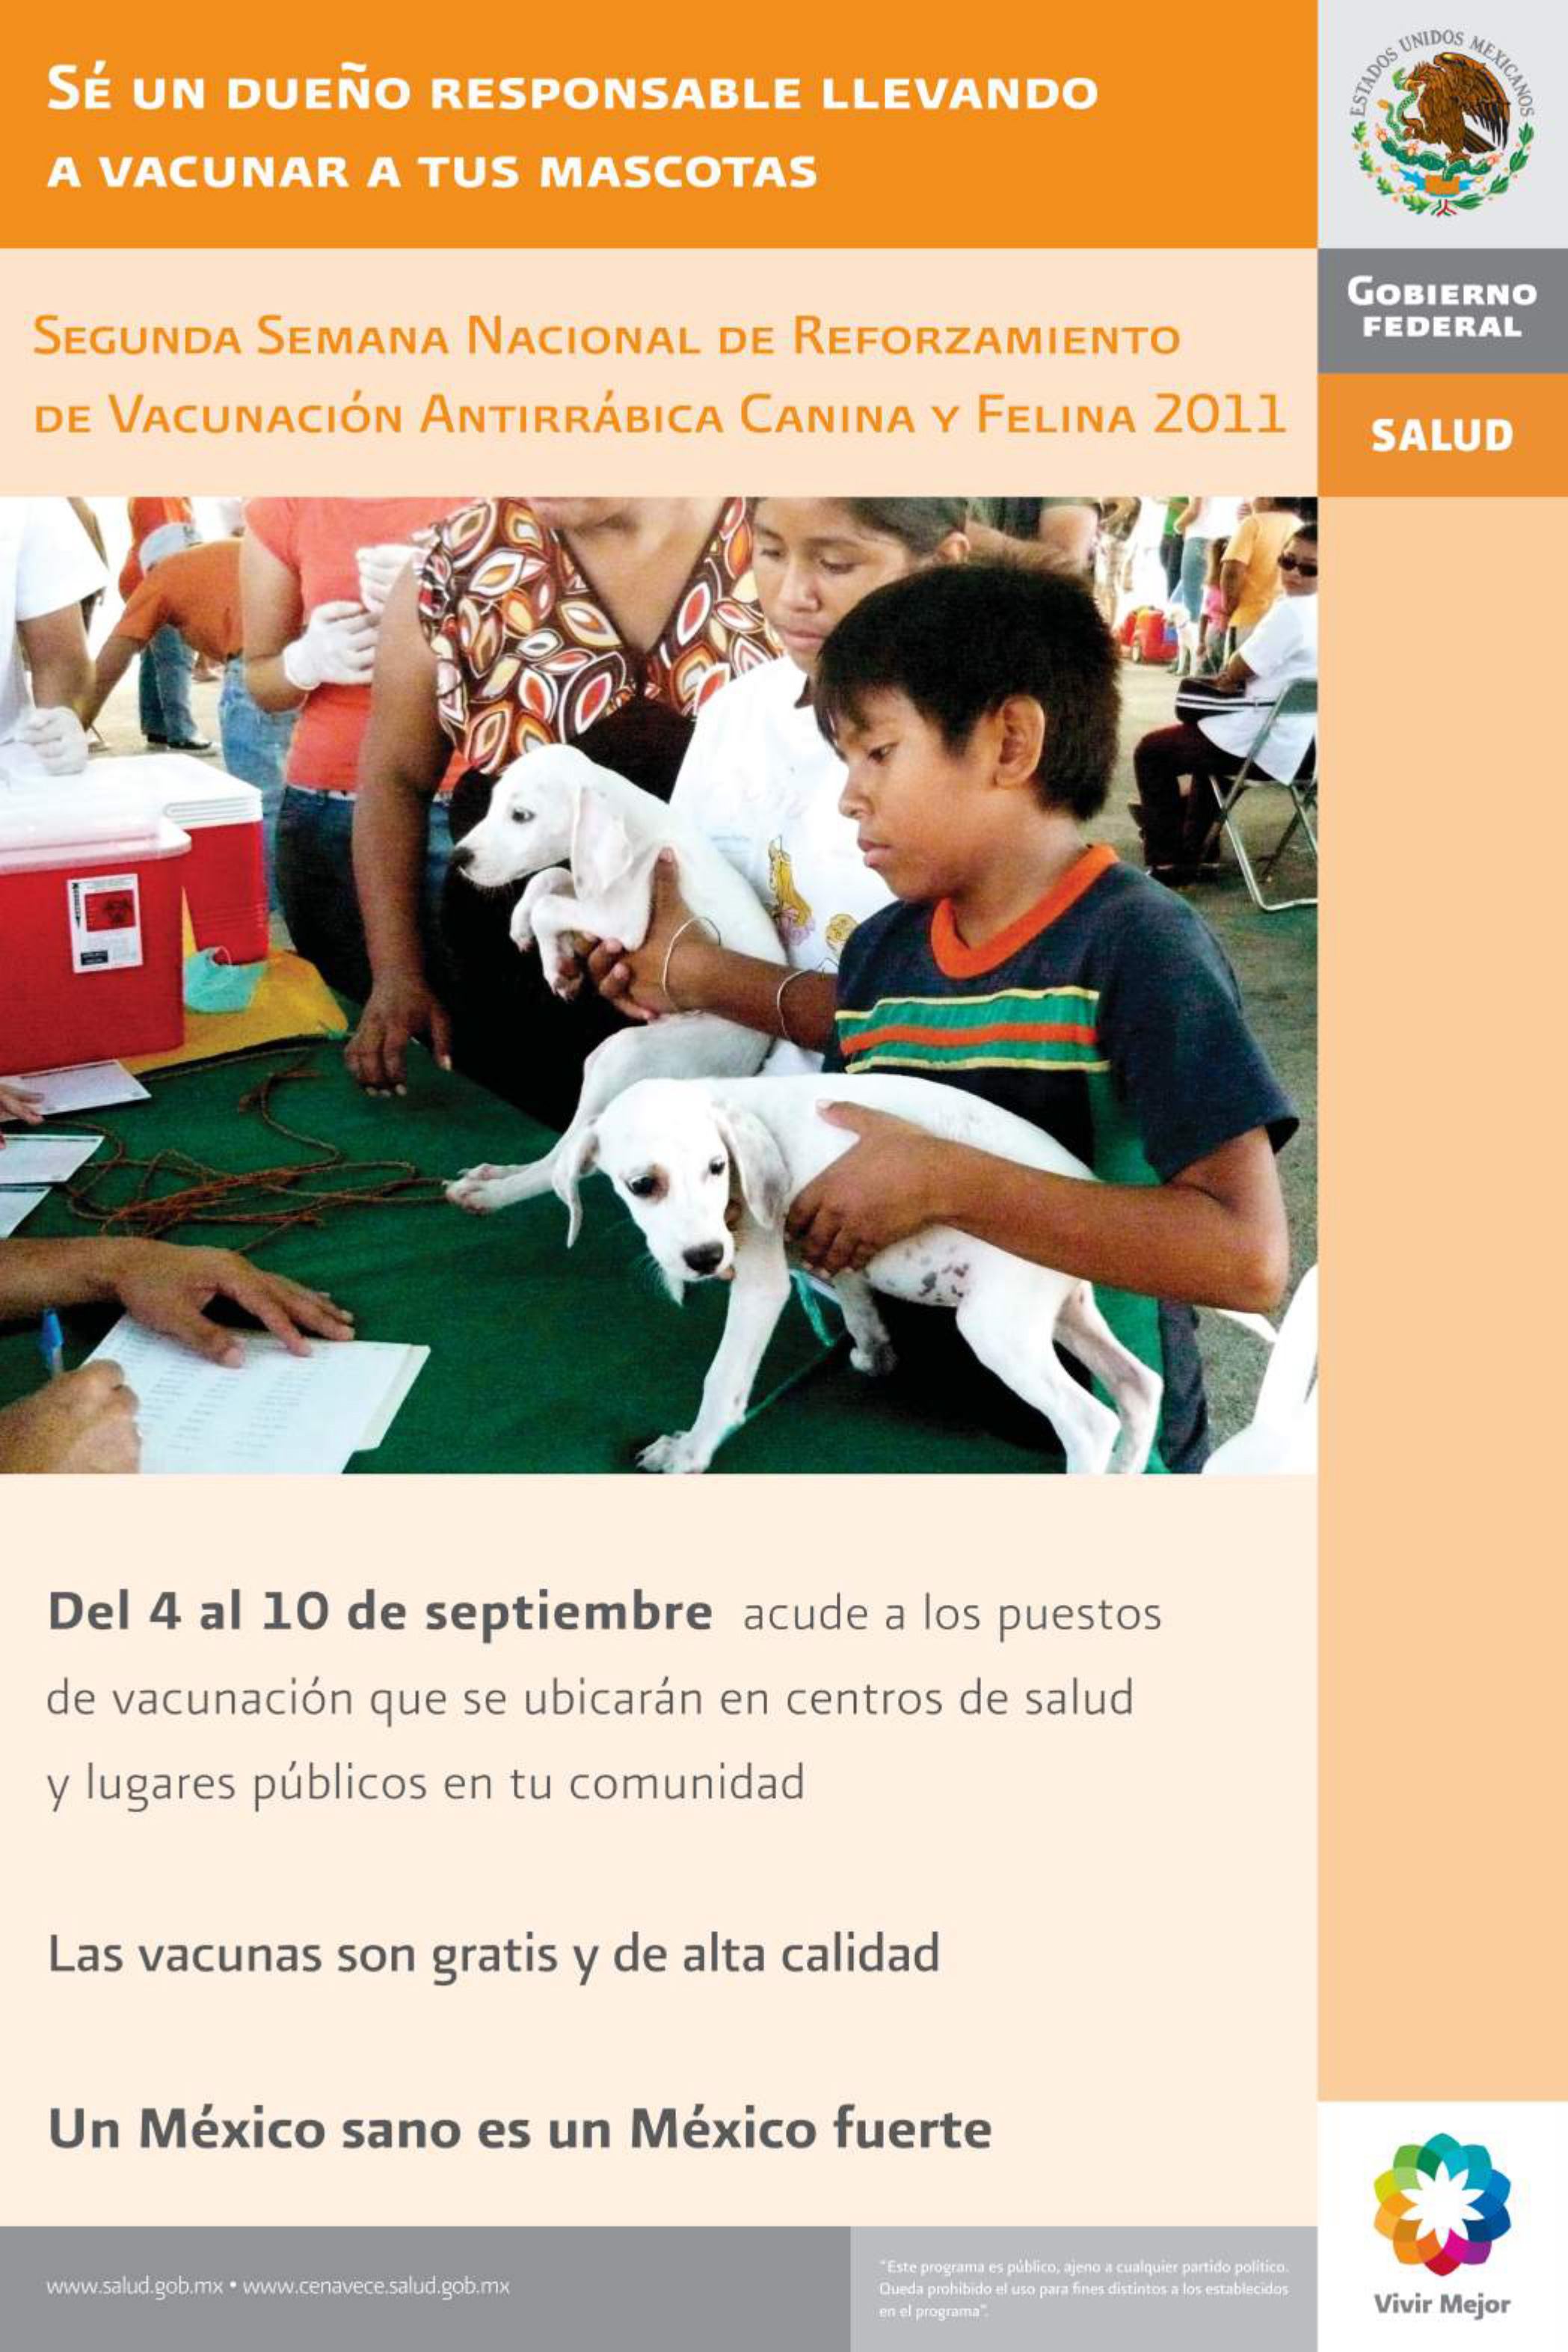 Cartel conmemorativo de la Semana Nacional de Reforzamiento de Vacunación Antirrábica Canina y Felina 2011